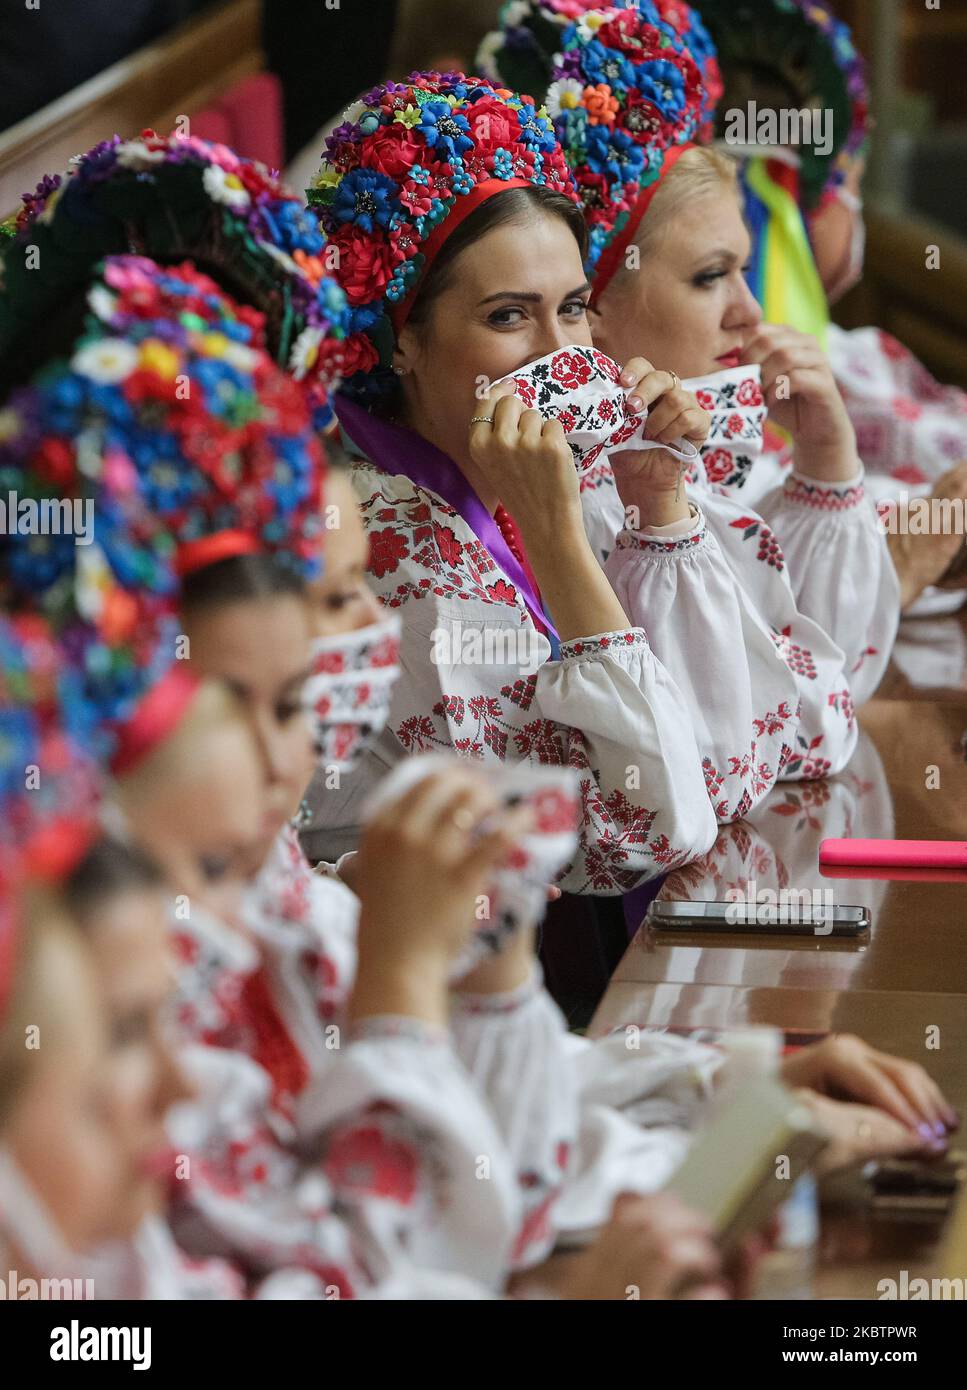 Les chanteurs de chœur national portant des costumes nationaux ukrainiens attendent de chanter un hymne pour une cérémonie d'ouverture à Kiev, Ukraine, 16 juillet 2020. Environ 5 cents anciens membres du Premier Parlement ukrainien et députés intérimaires, dont certains avec leur masque facial, se sont réunis dans une salle avec le Président Volodymyr Zelenskyy et les Ministres du Gouvernement pour célébrer le 30th anniversaire de la Déclaration sur la souveraineté de l'Etat de l'Ukraine (photo de Sergii Kharchenko/NurPhoto) Banque D'Images